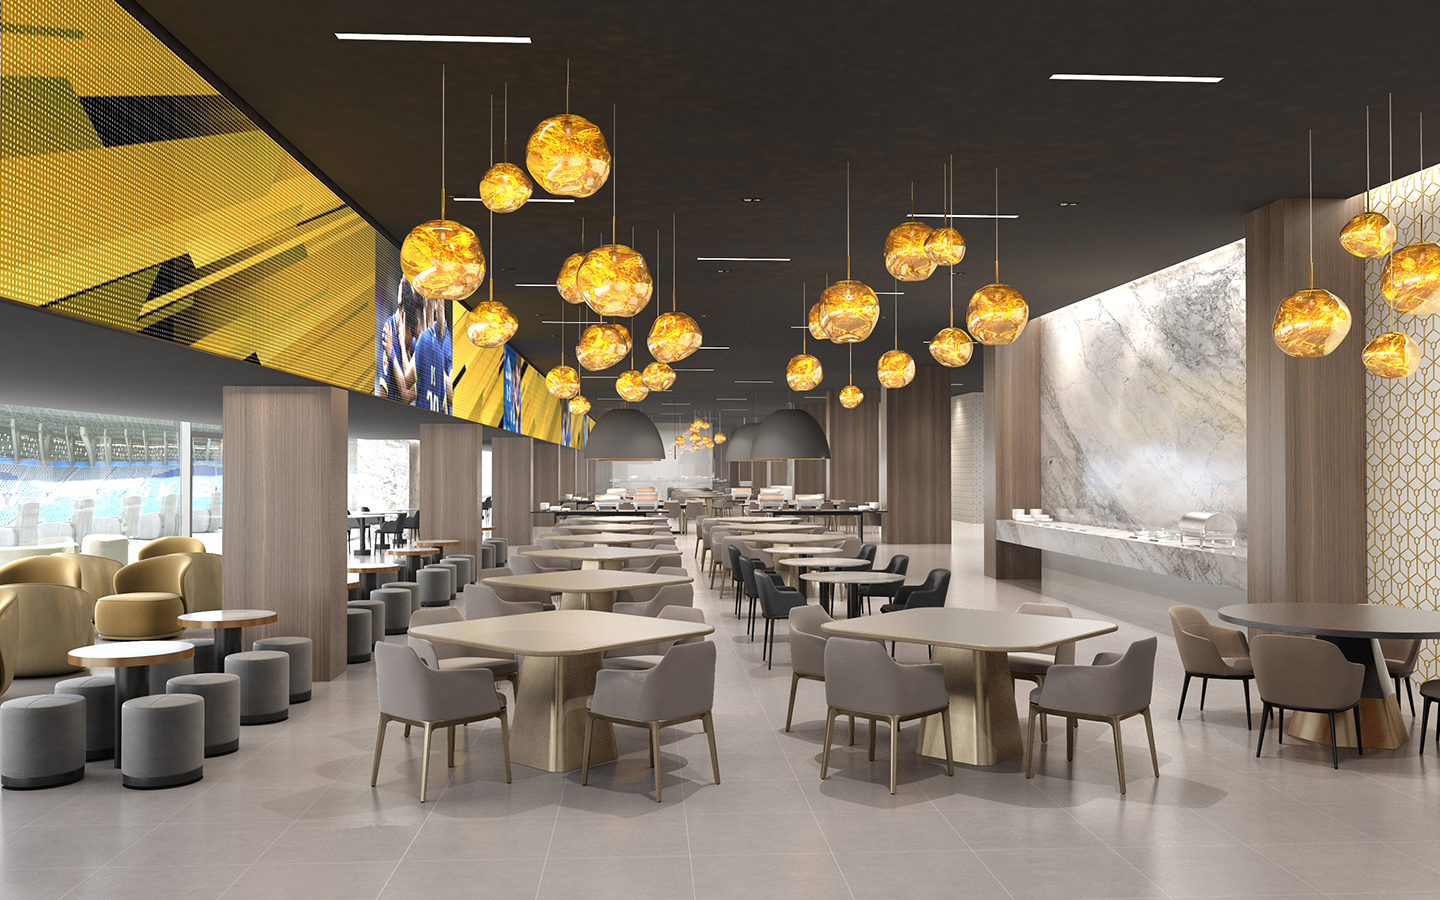 New MRSOOL Park LED Lounge lighting